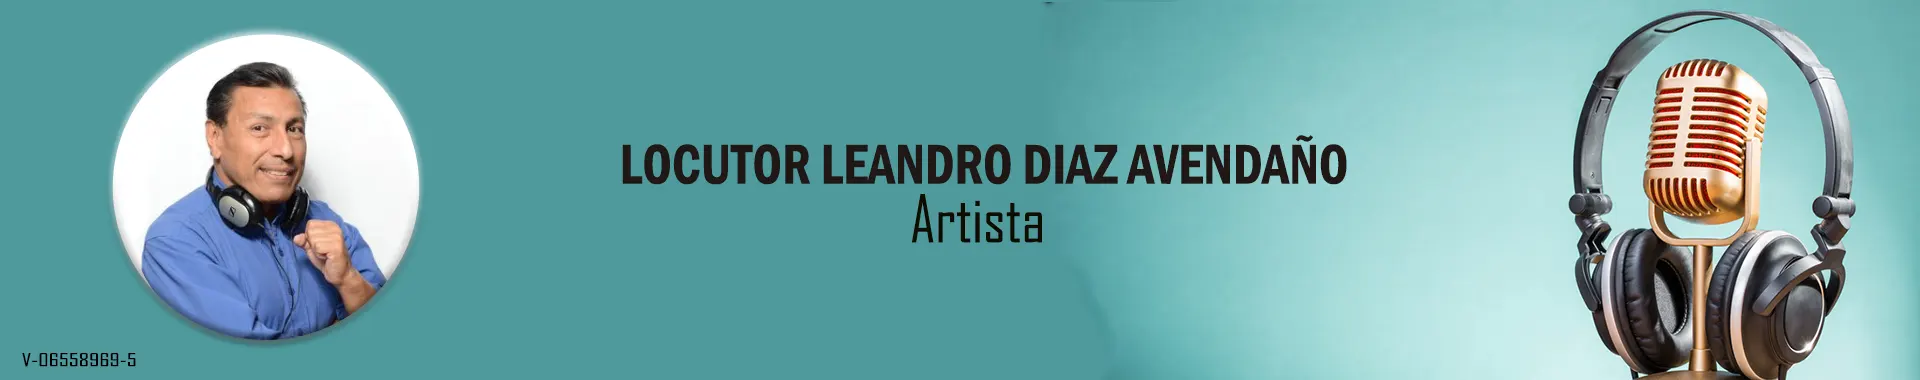 Imagen 1 del perfil de Locutor Leandro Díaz Avendaño